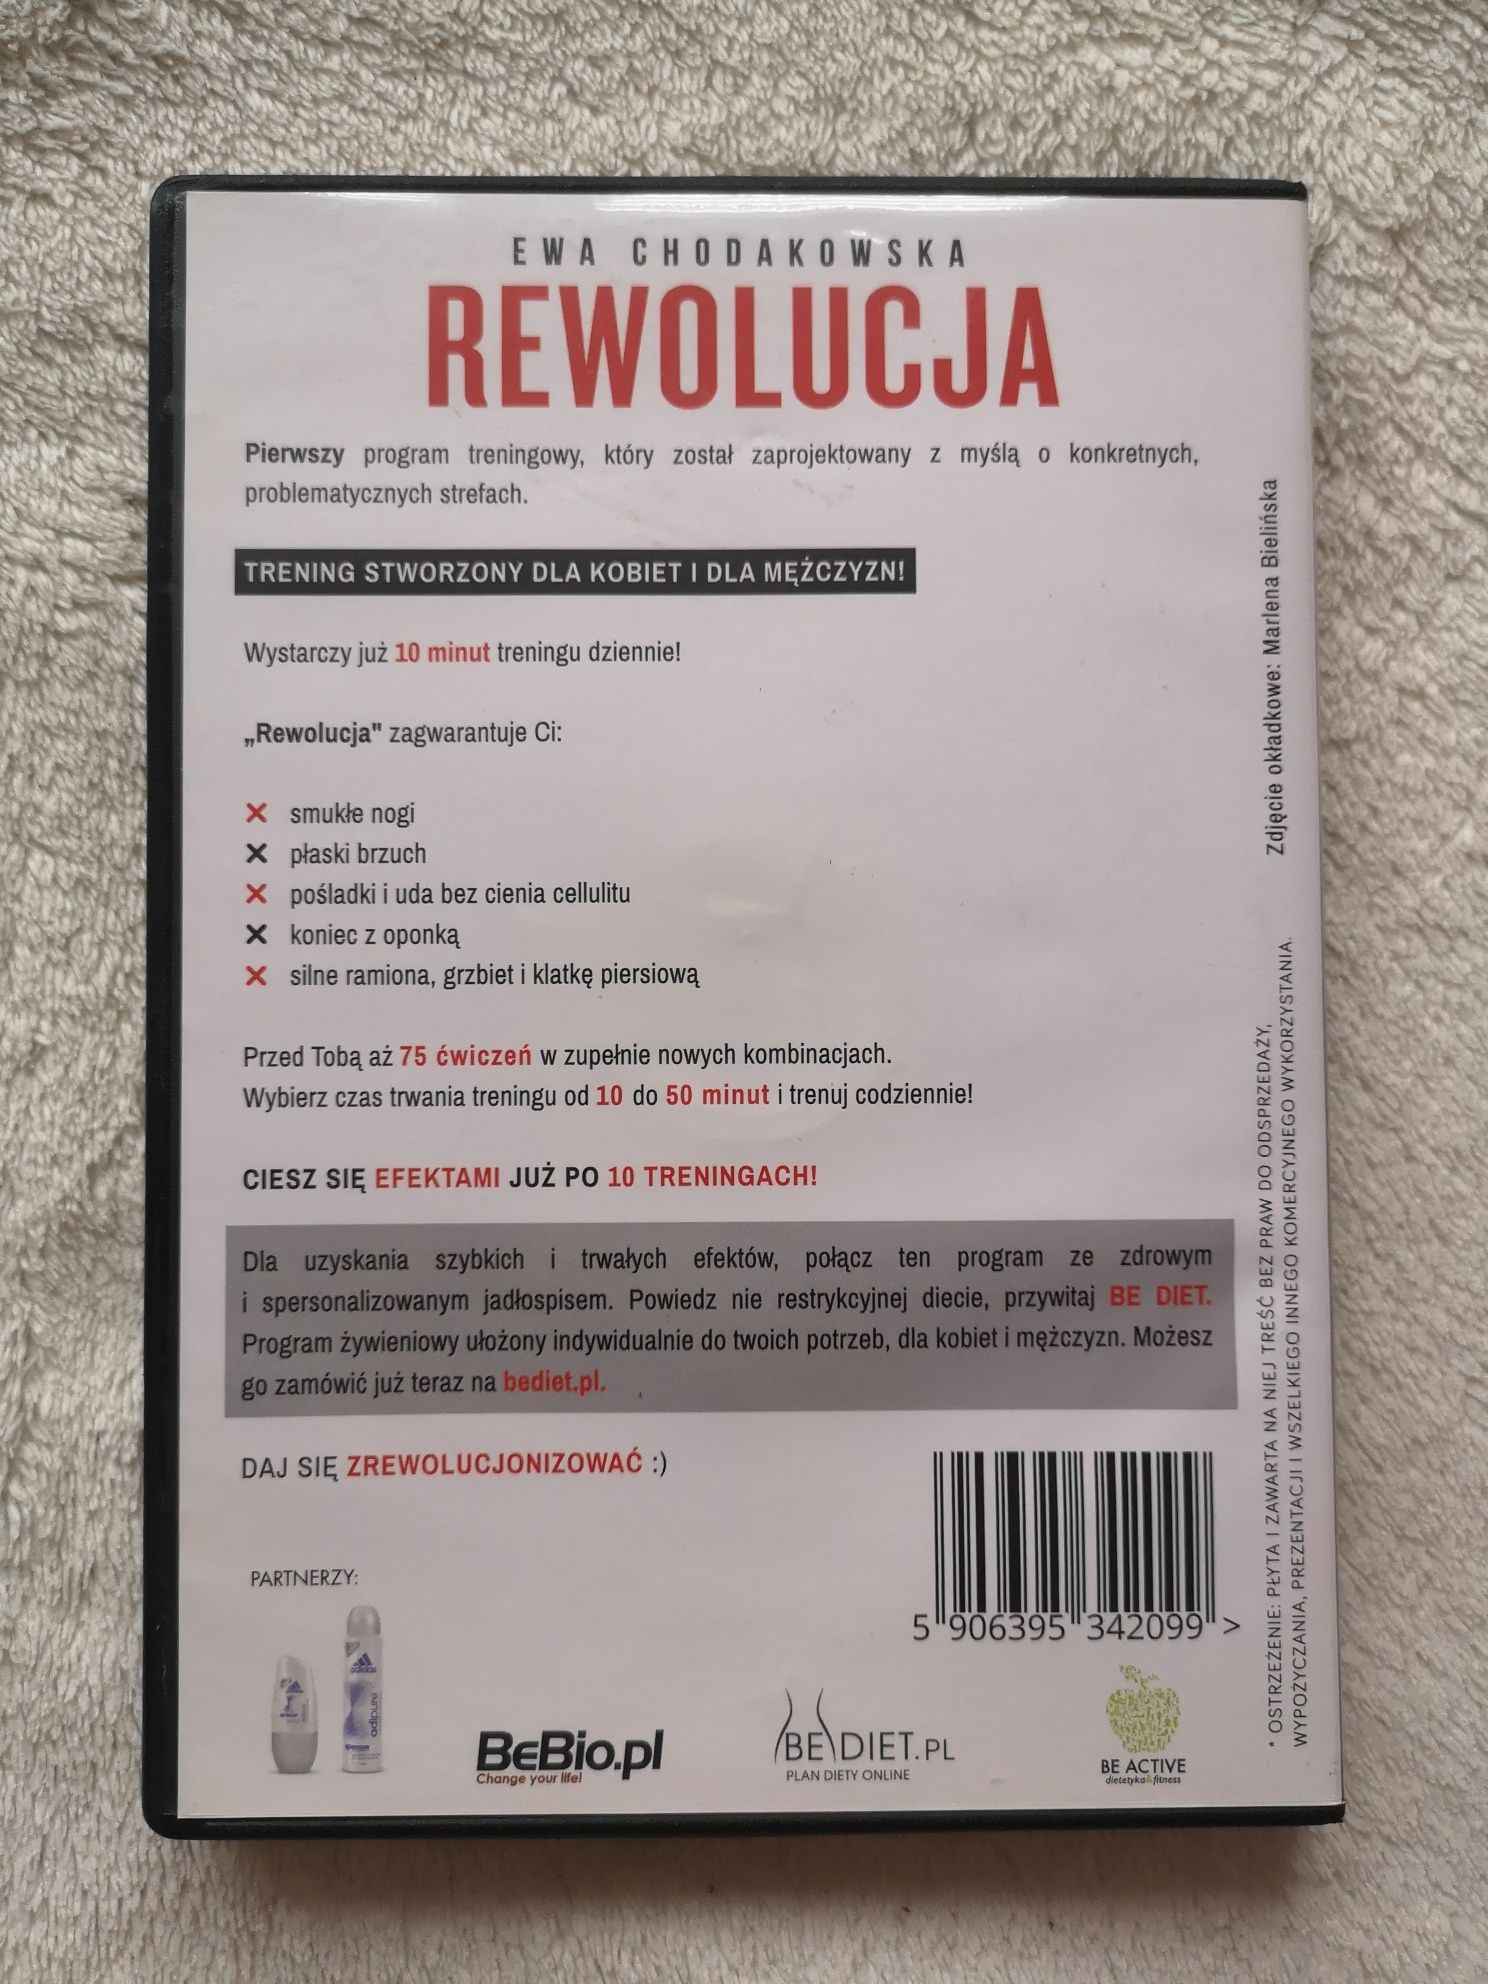 Rewolucja Ewa Chodakowska